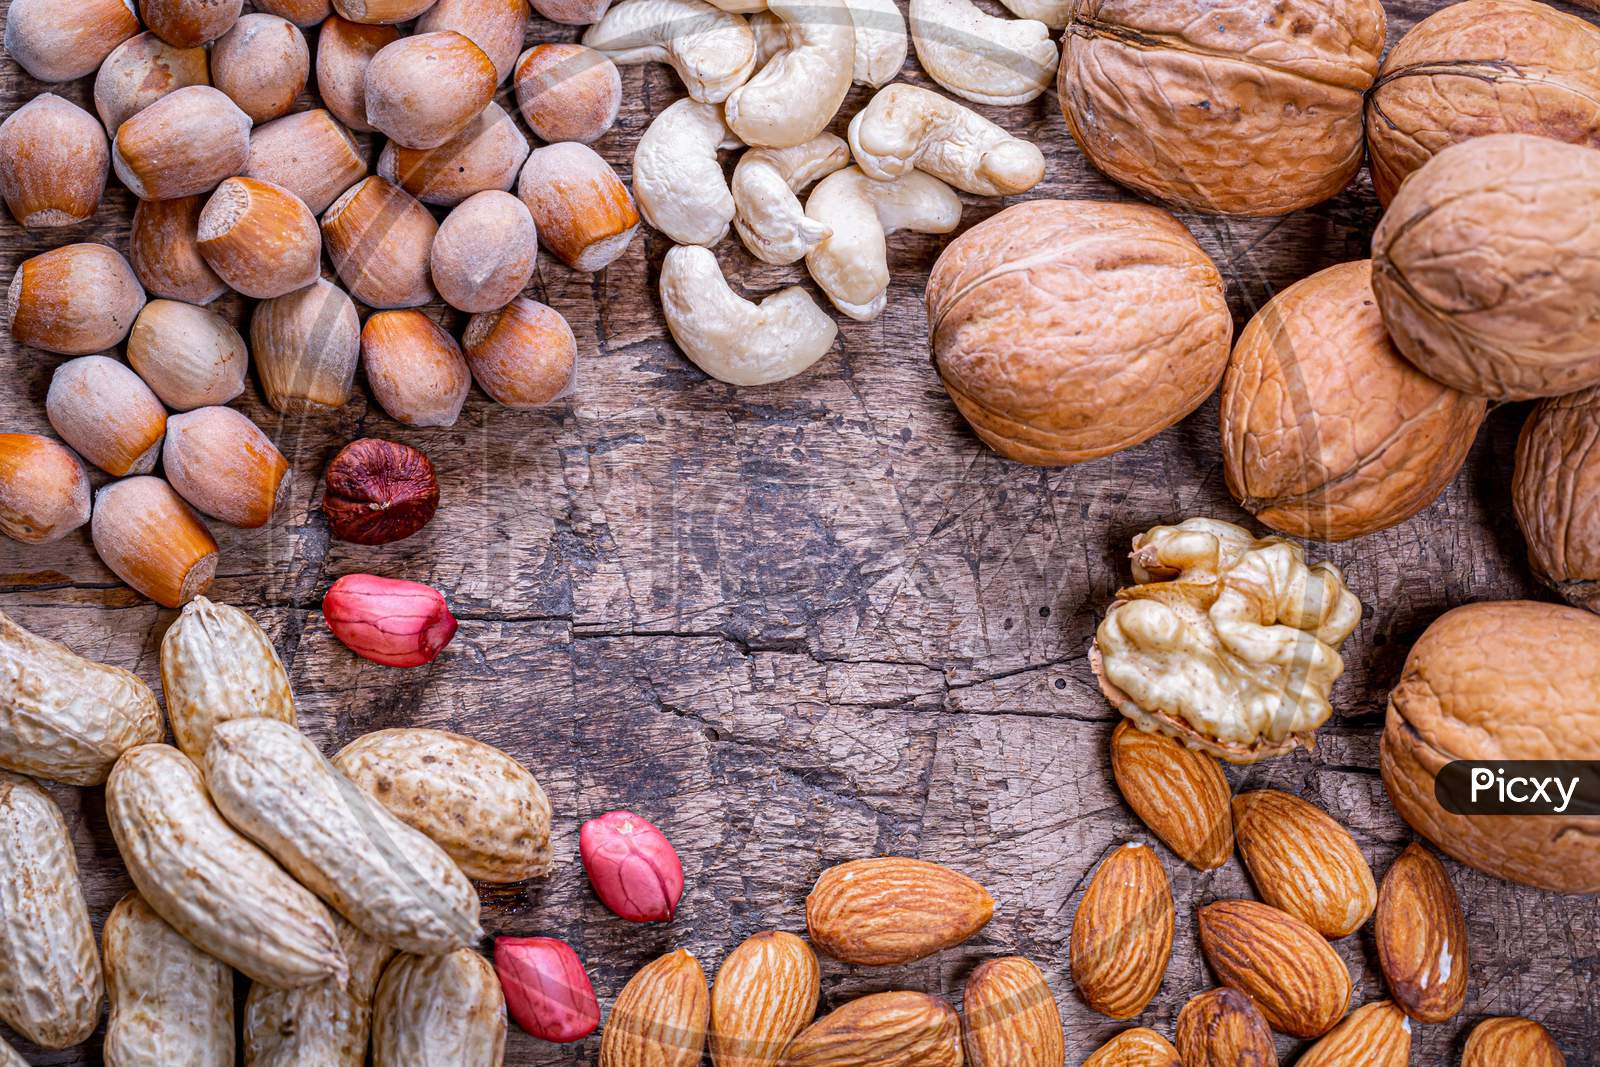 Peanuts, walnuts, almonds, cashews and hazelnuts